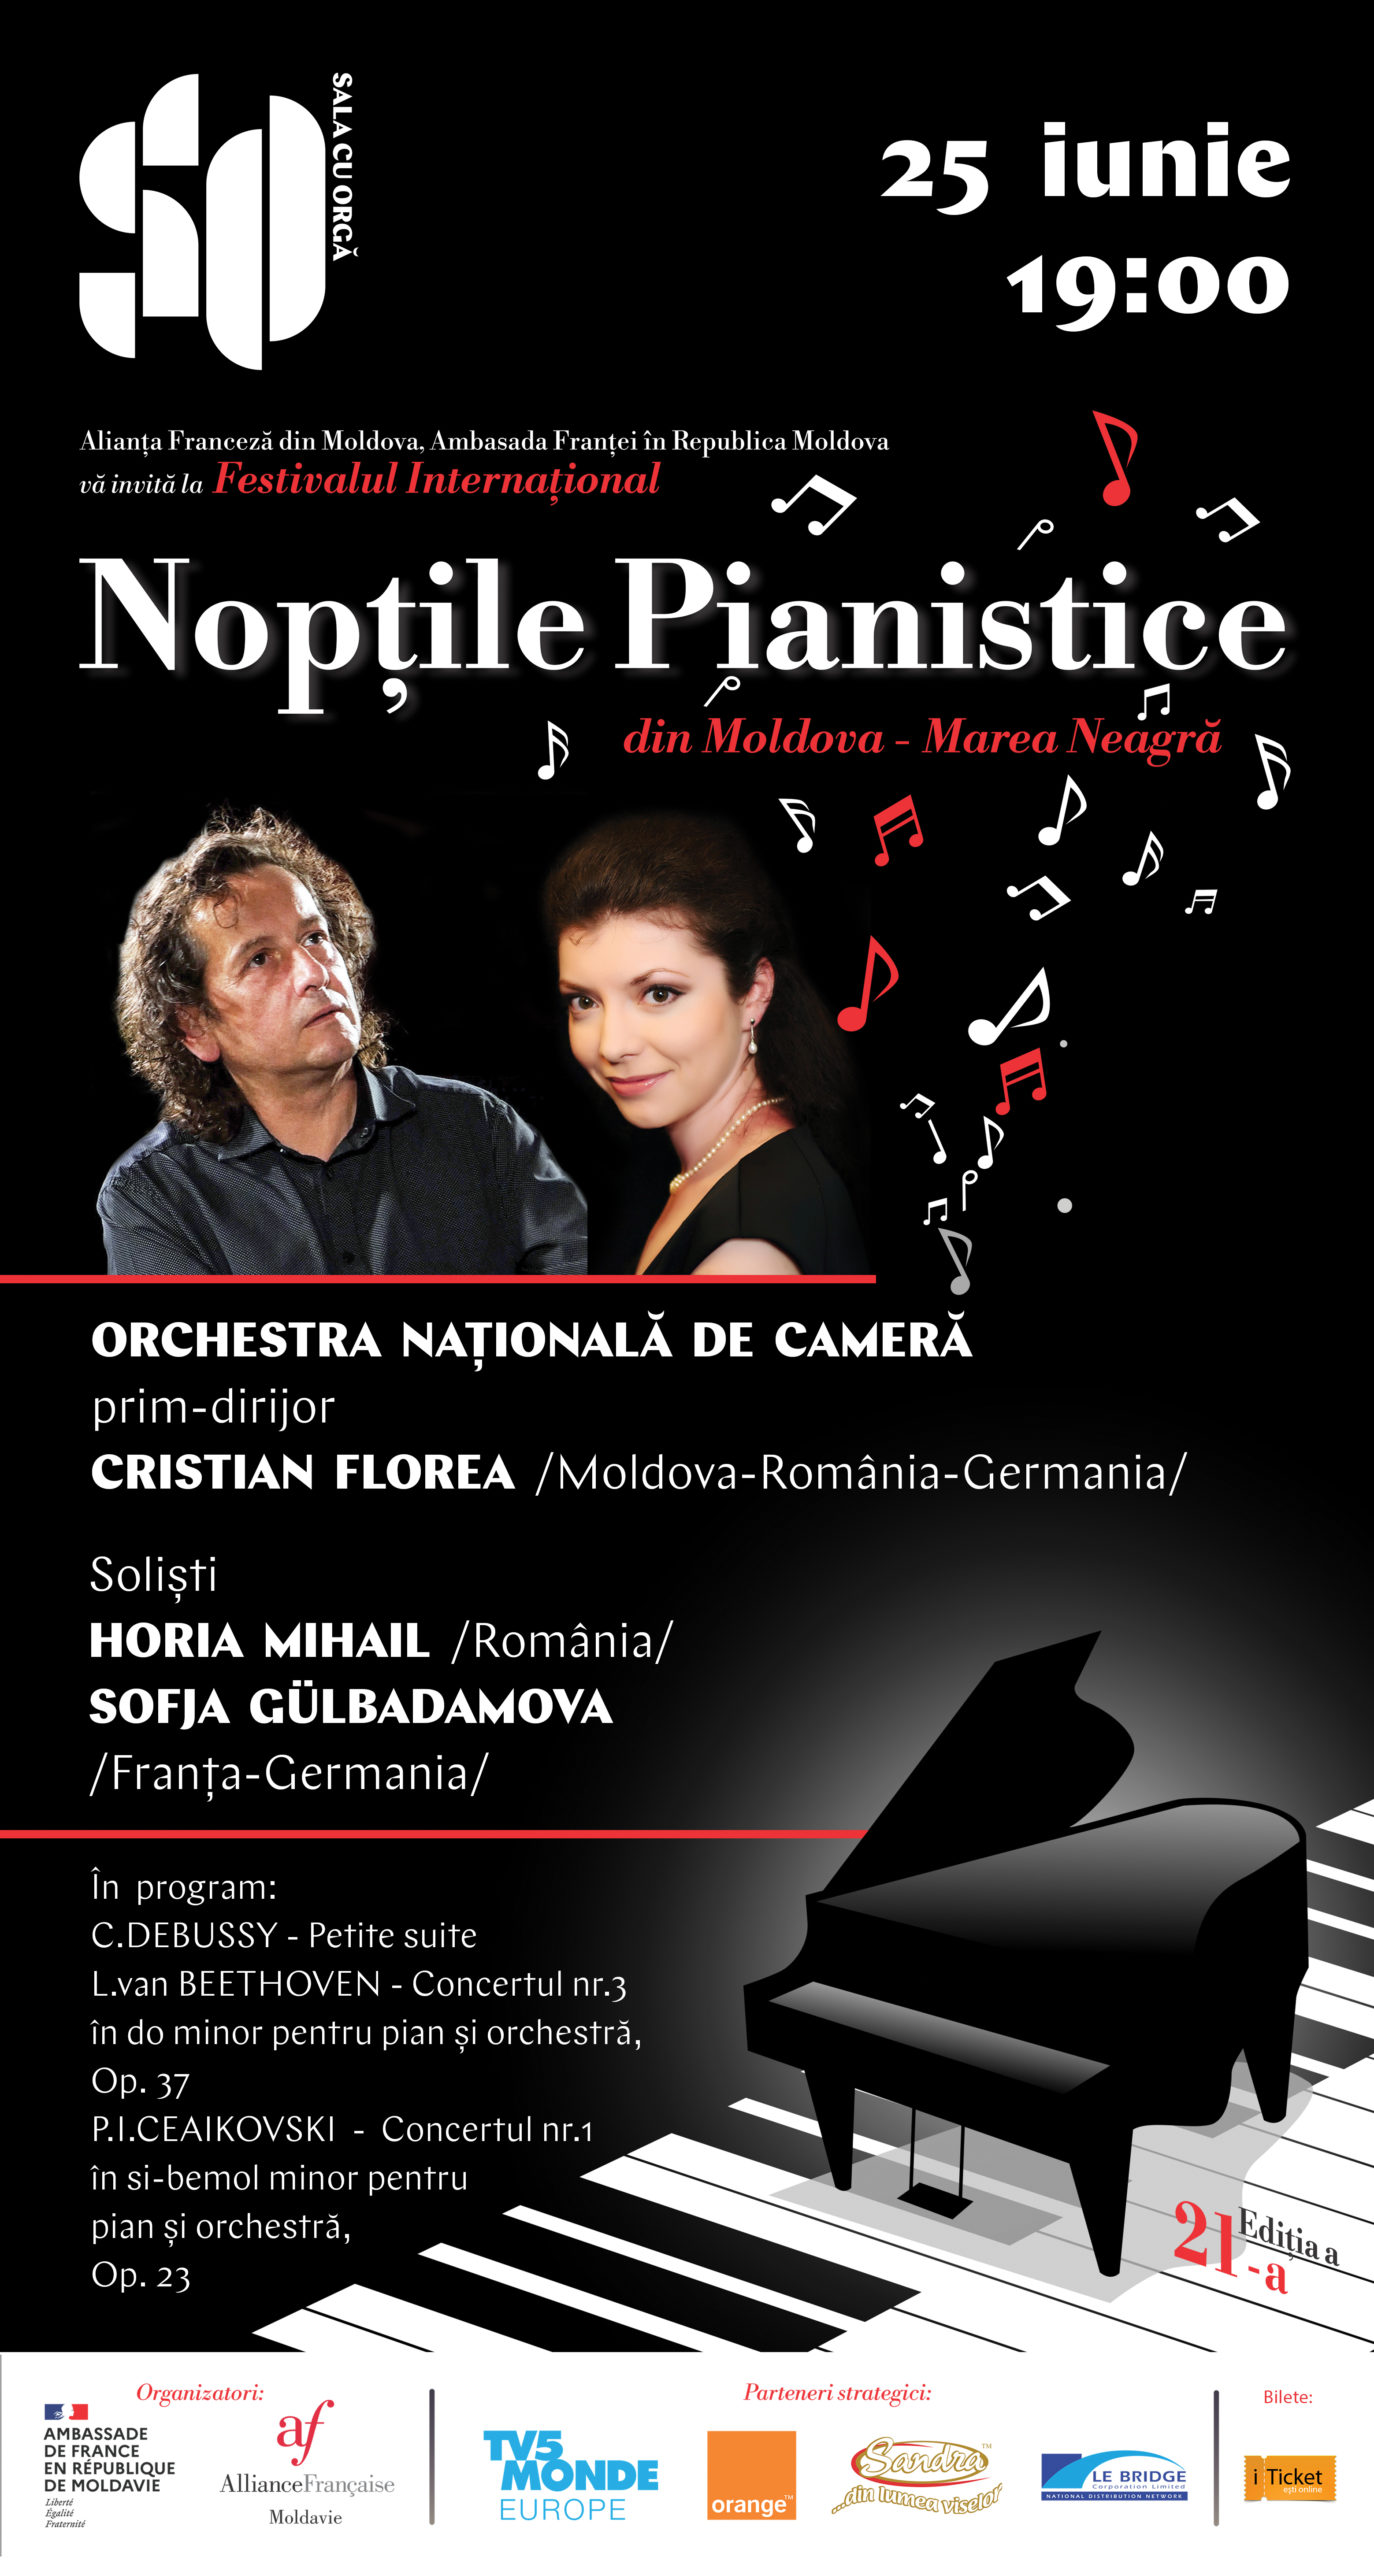 Concert des Nuits Pianistiques de Moldavie – Mer Noire